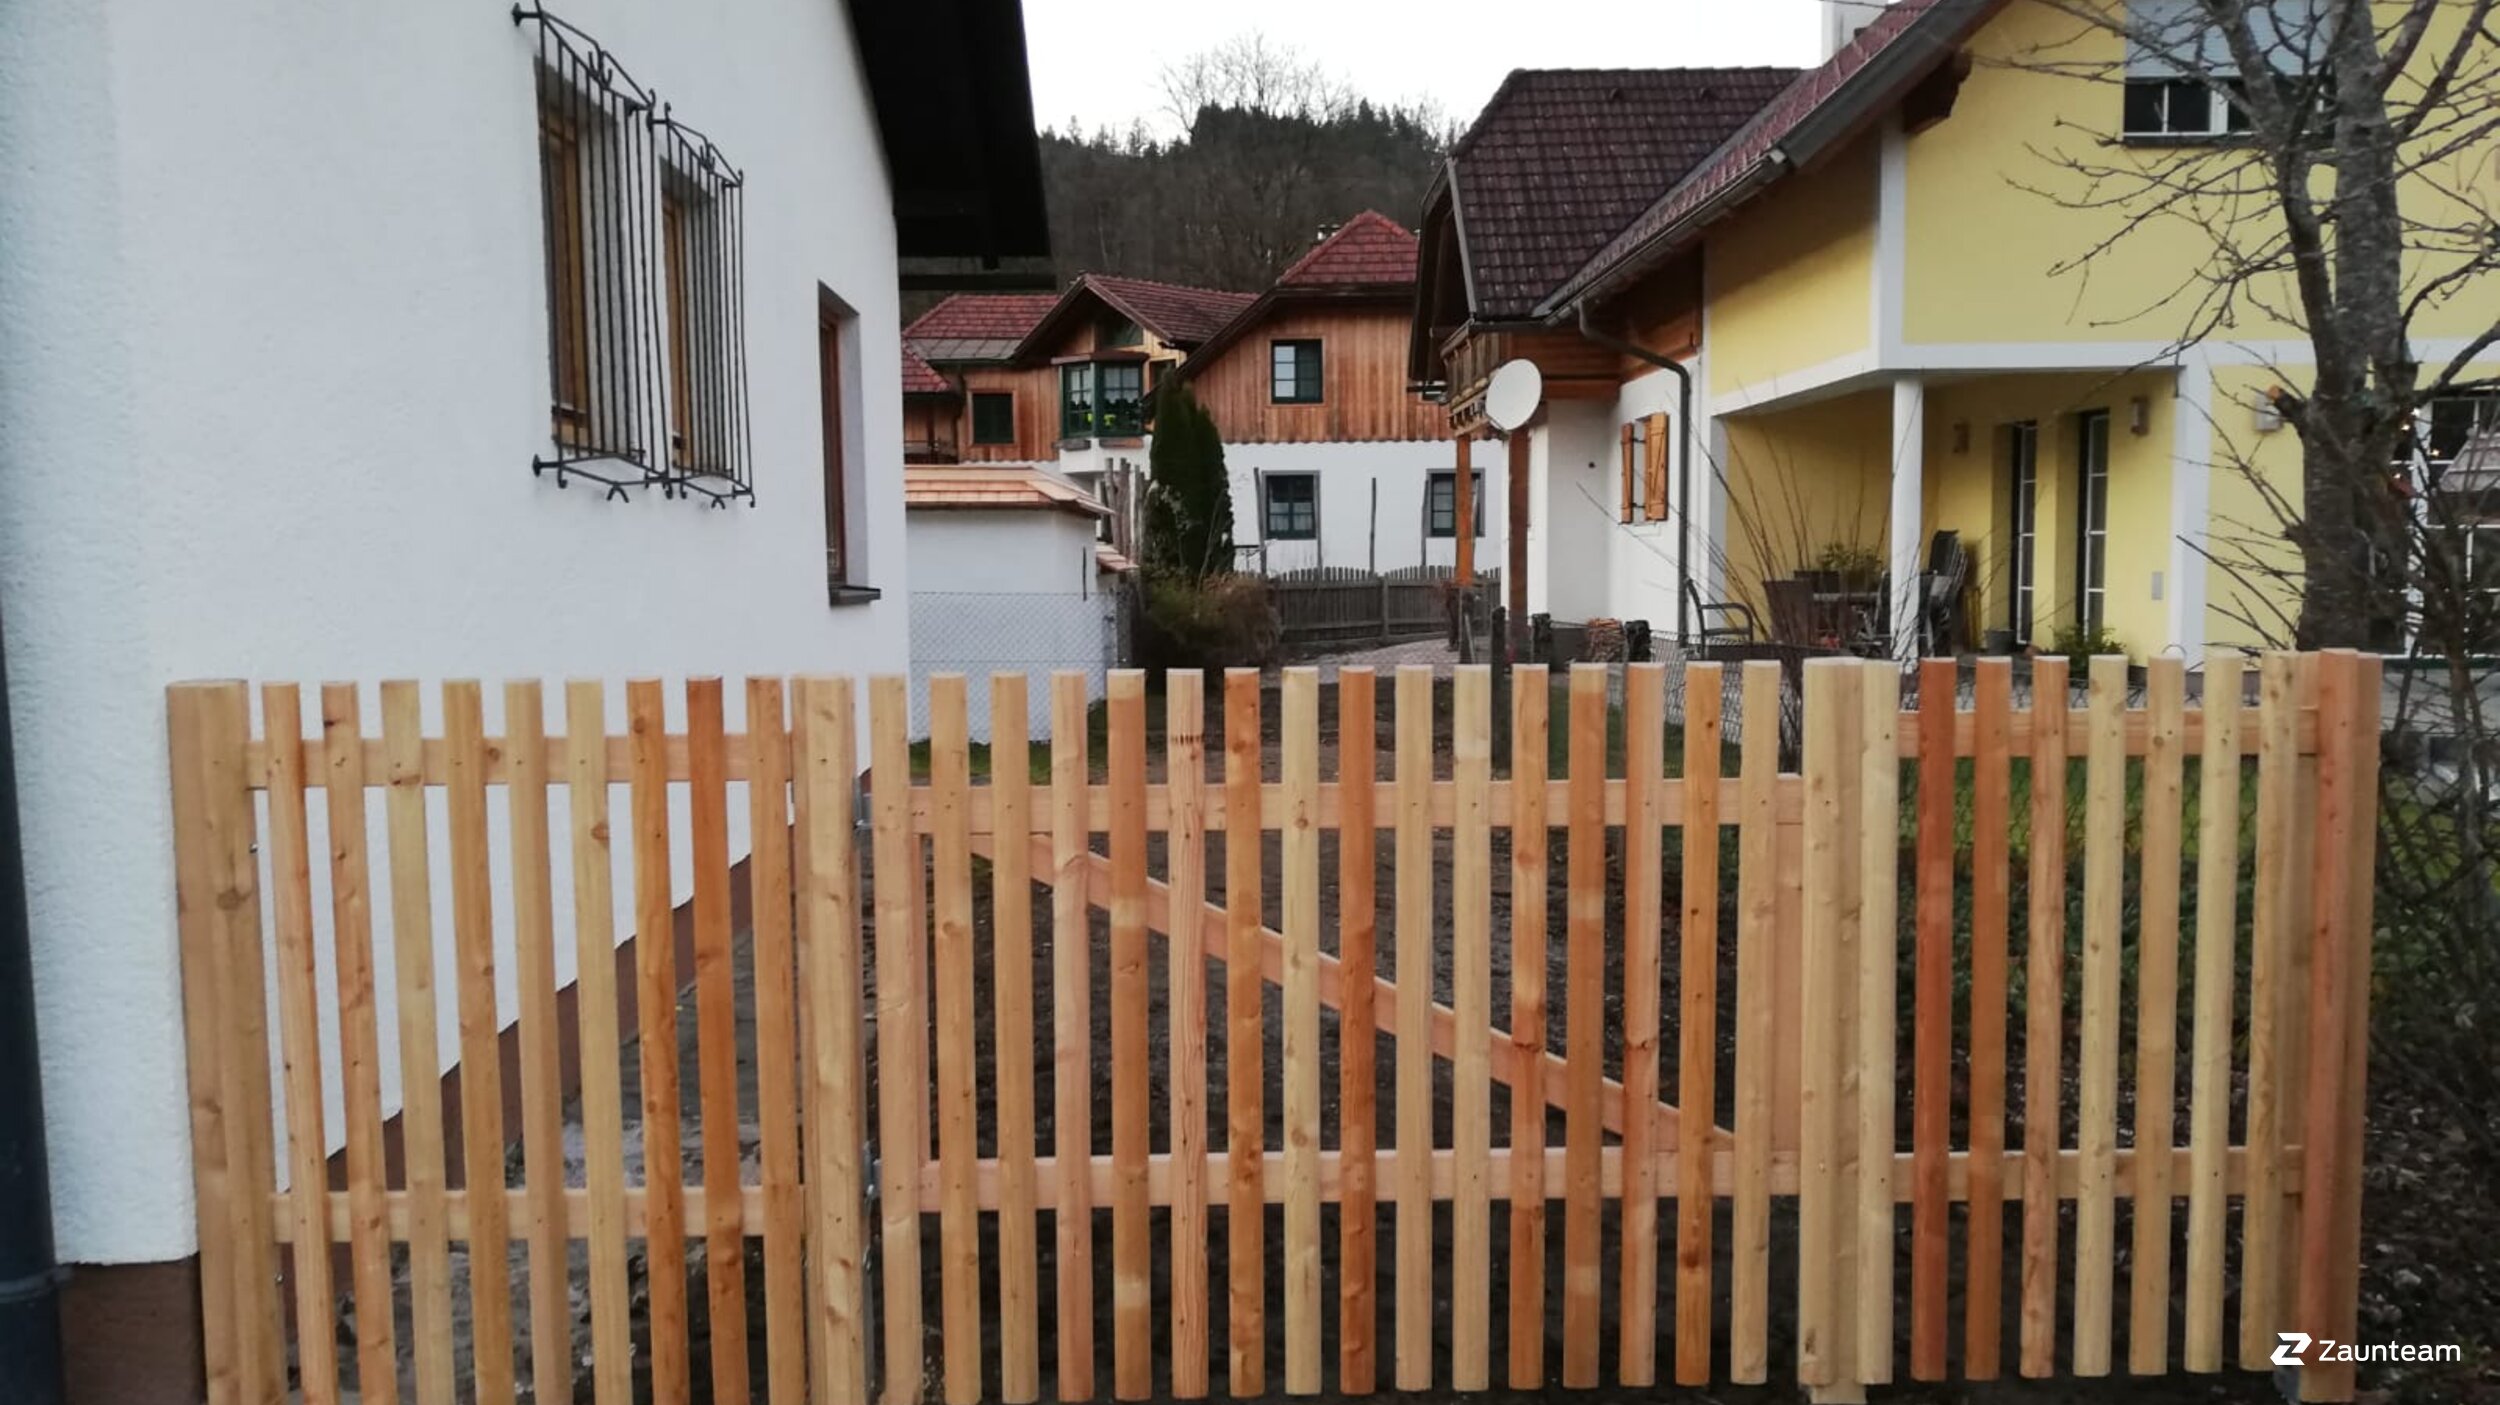 Protection brise-vue en bois de 2019 à 3071 Böheimkirchen Autriche de Zaunteam Wienerwald.